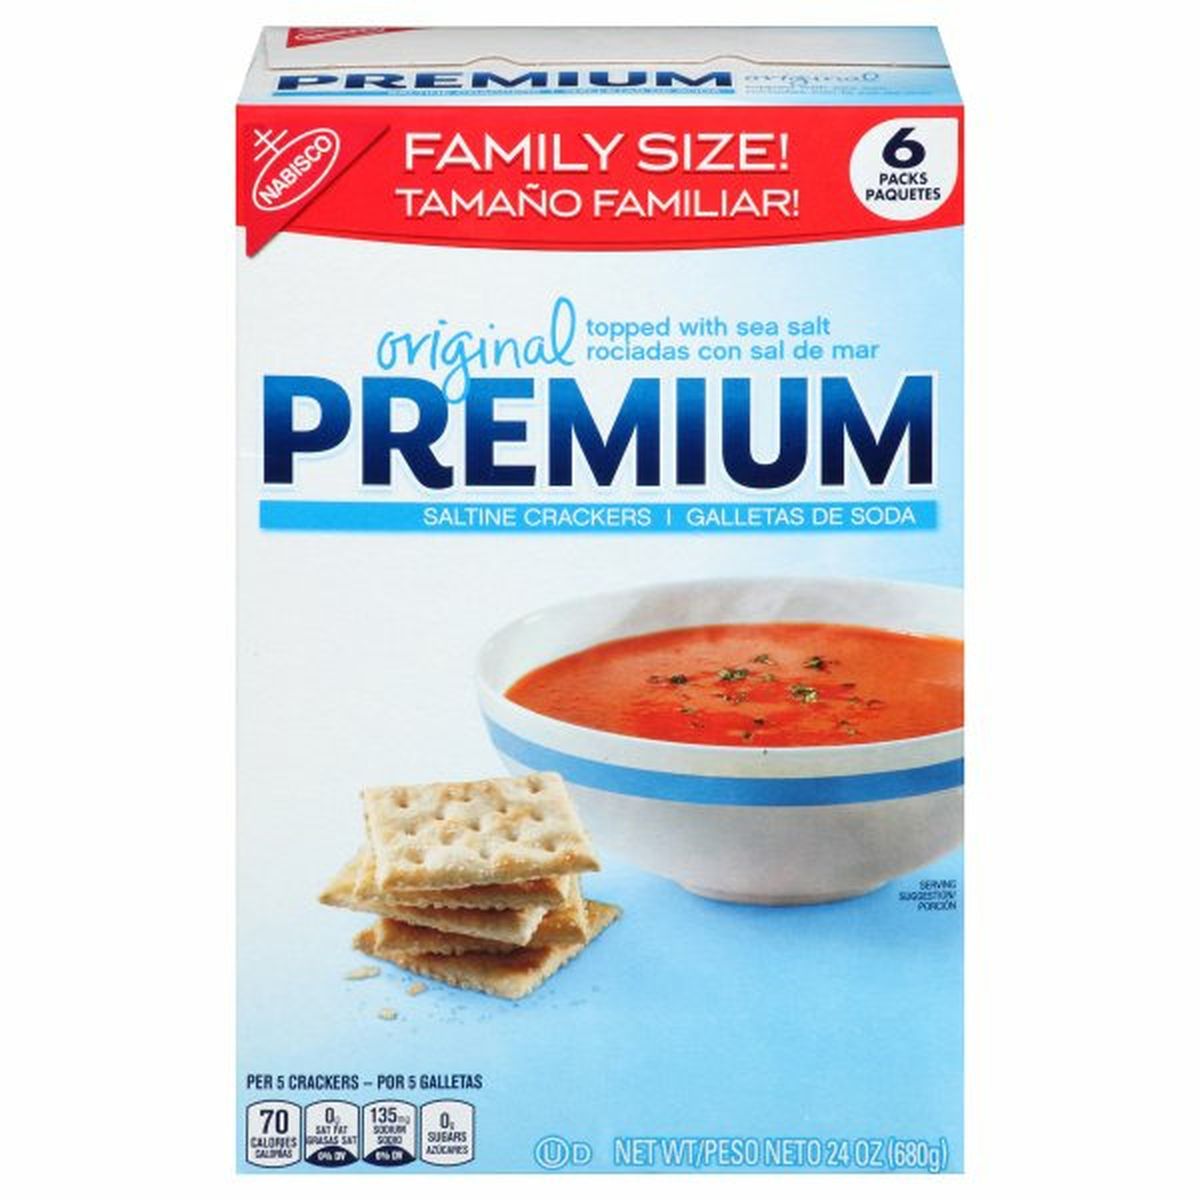 Calories in Premium Premium Saltine Crackers, Original, Family Size, 6 Pack